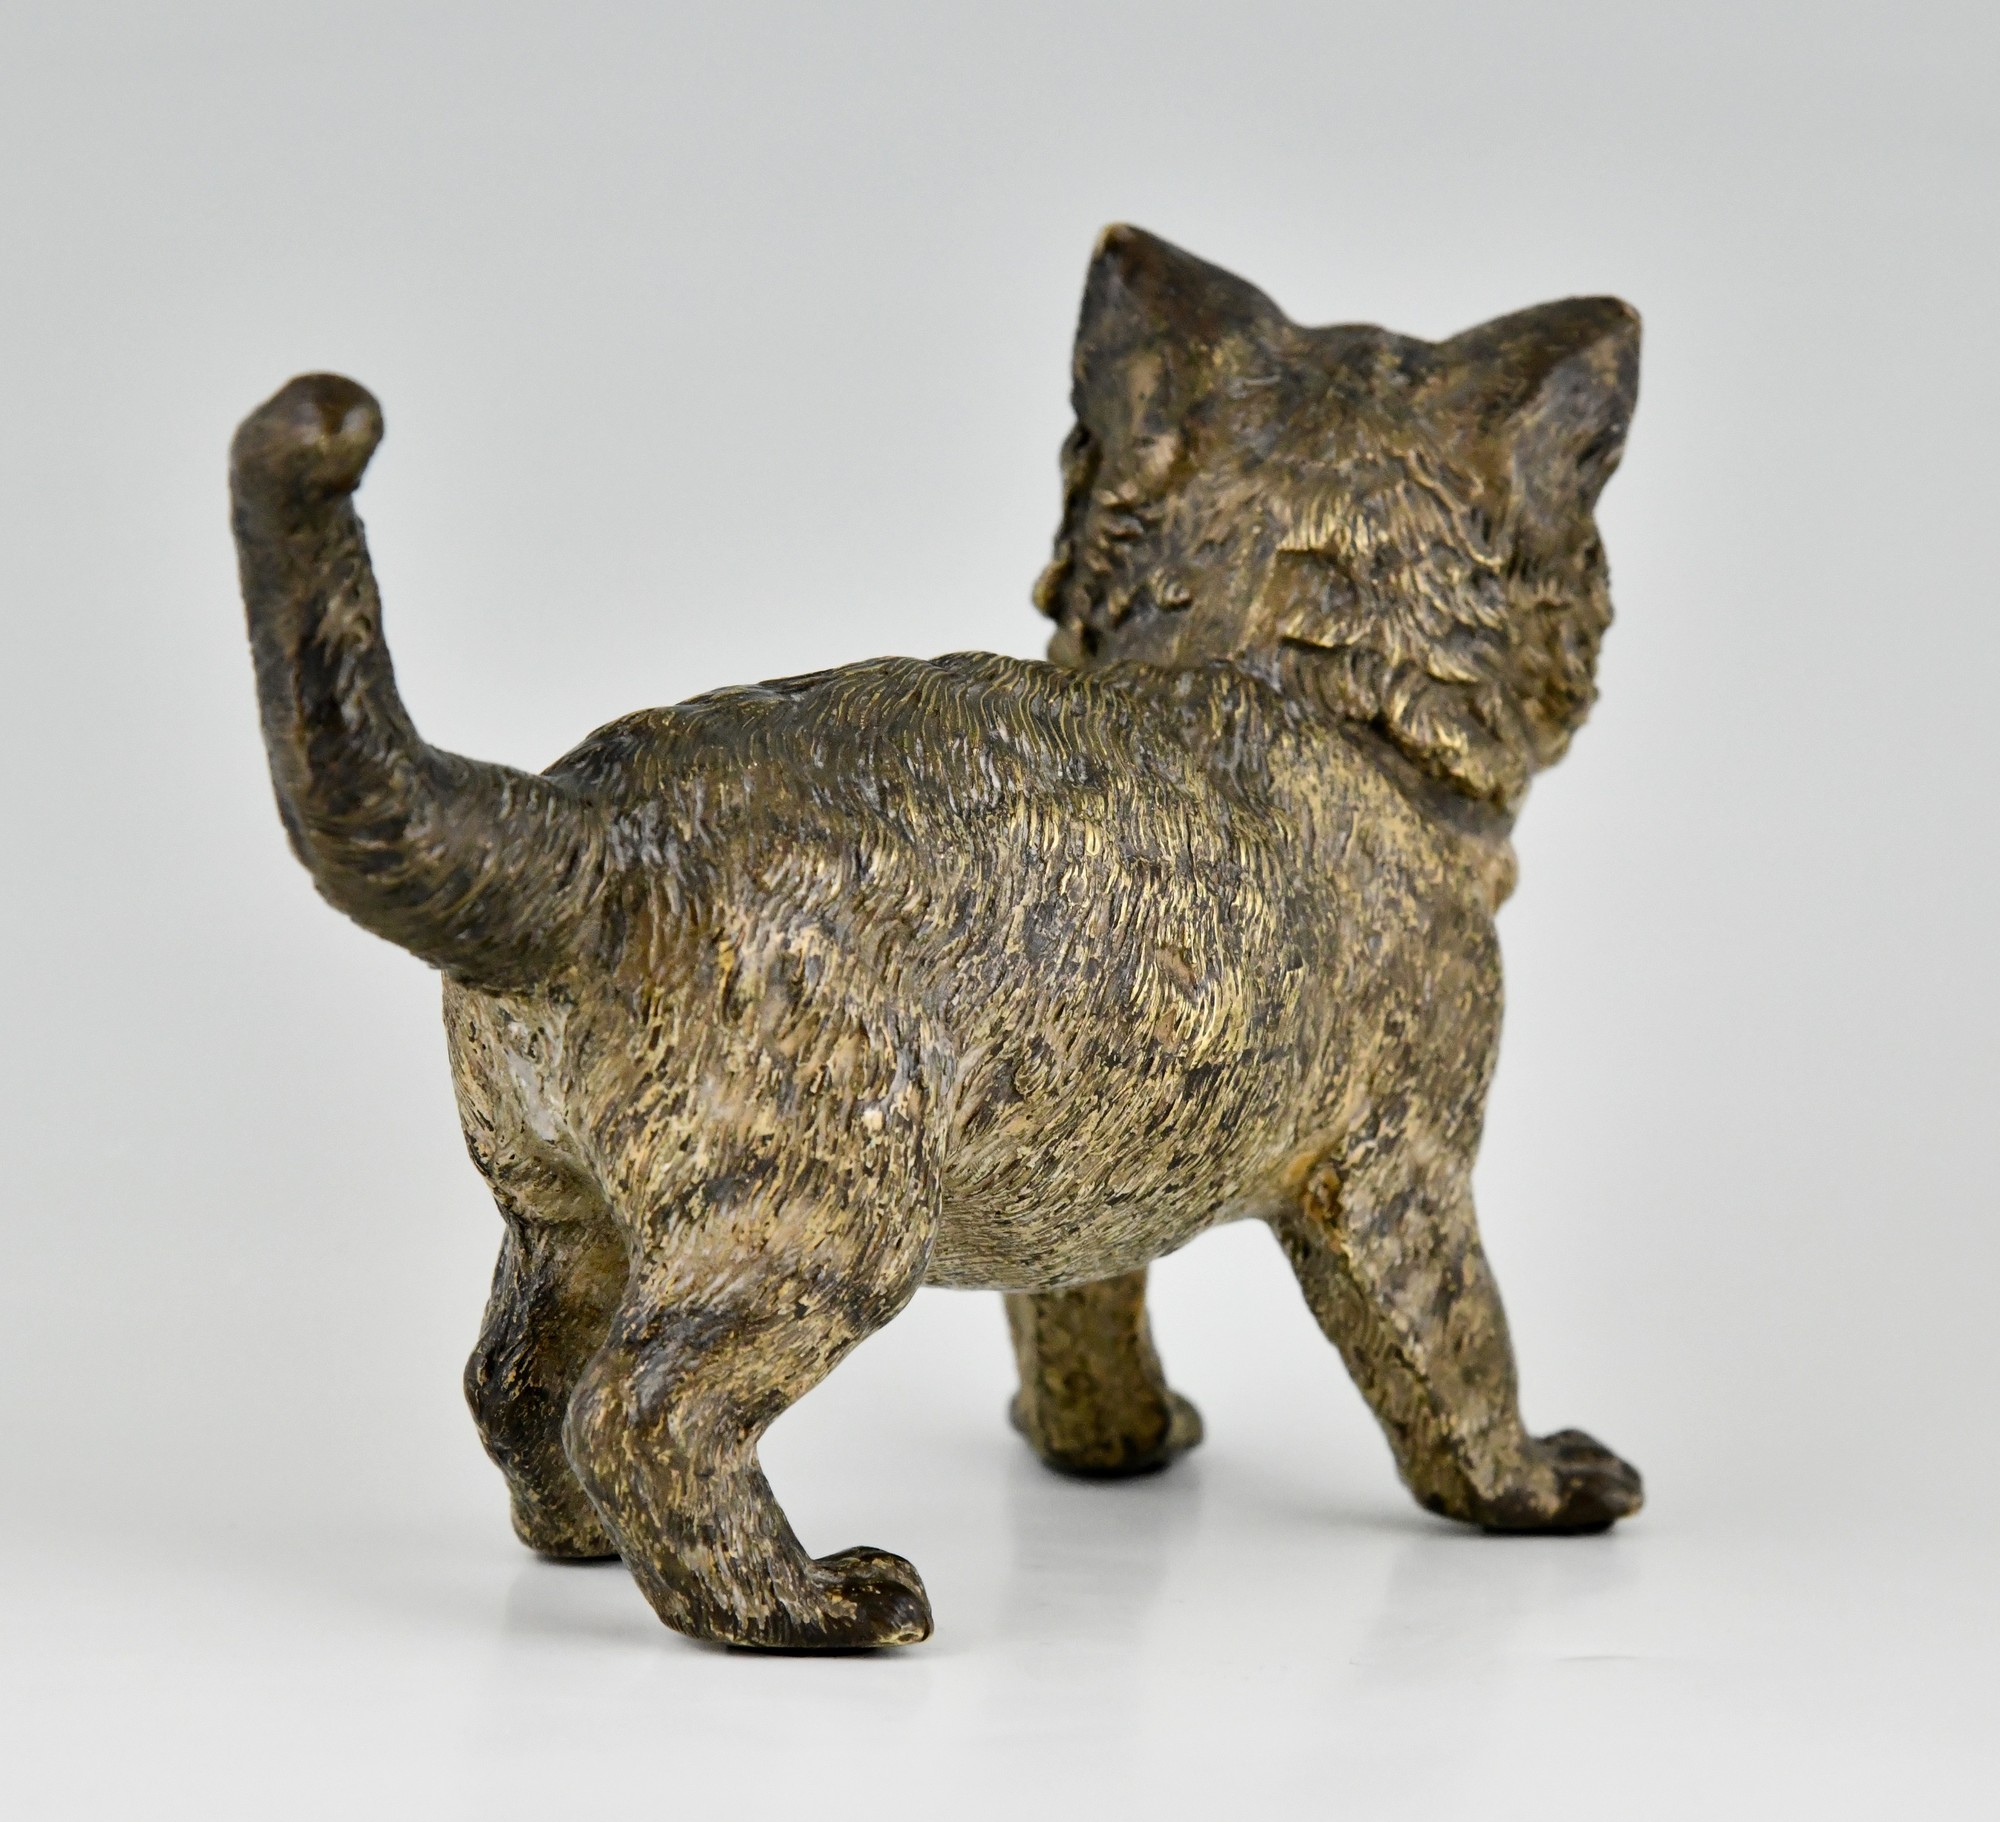 Antique Vienna sculpture of a cat Deconamic